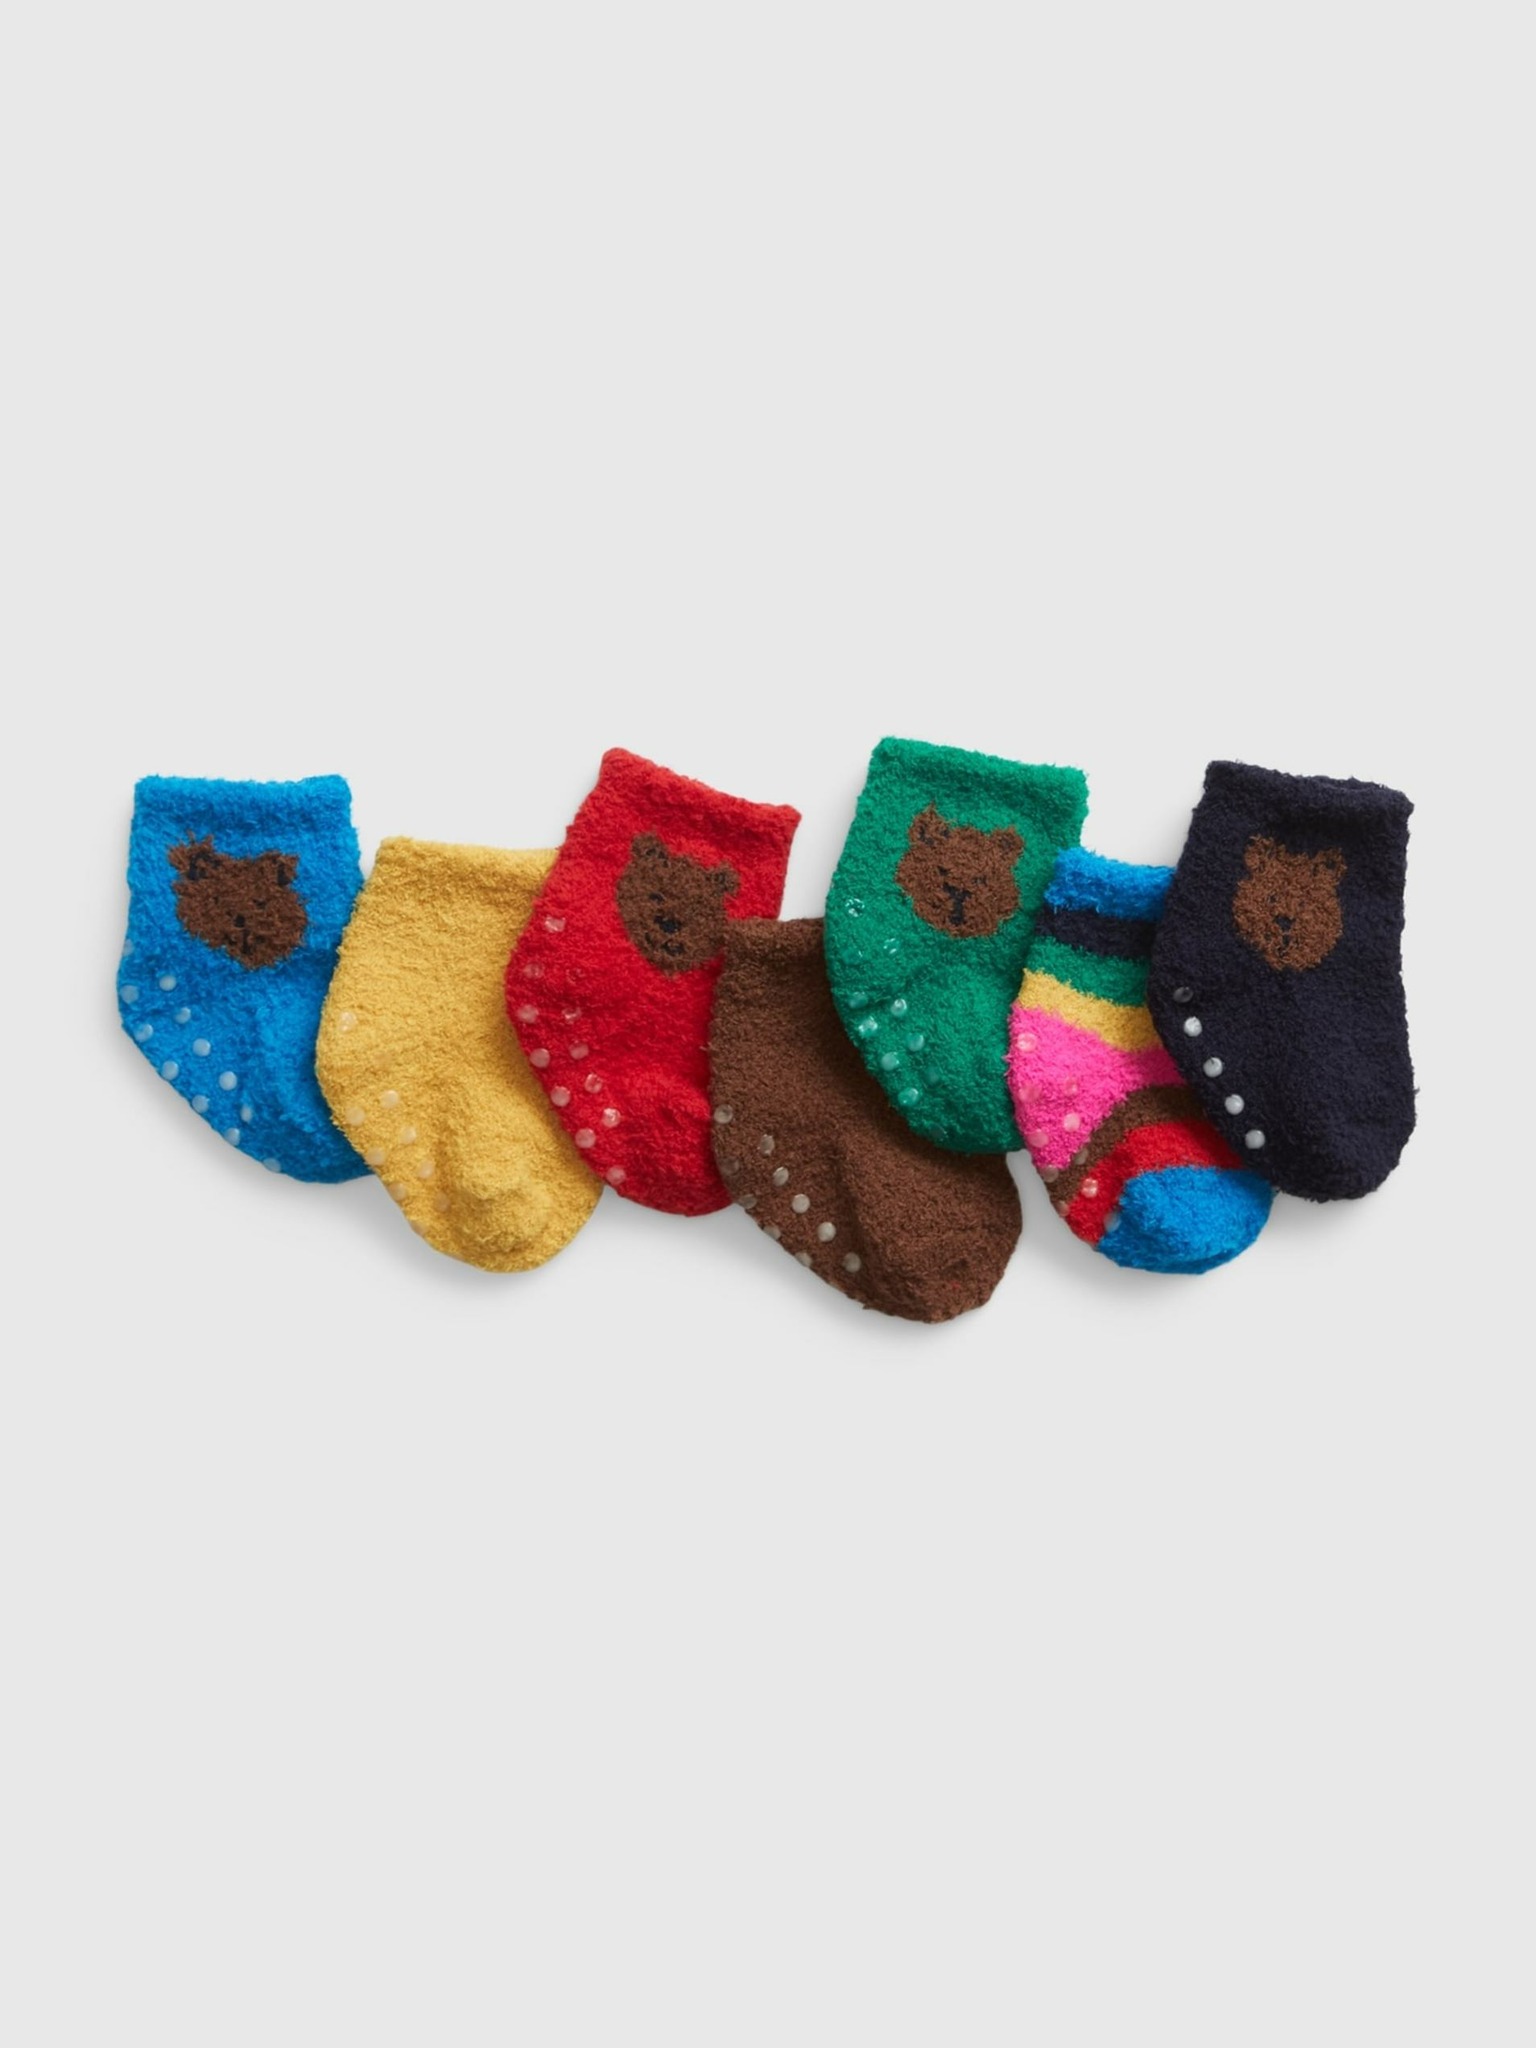 Ponožky 7 párů dětské GAP